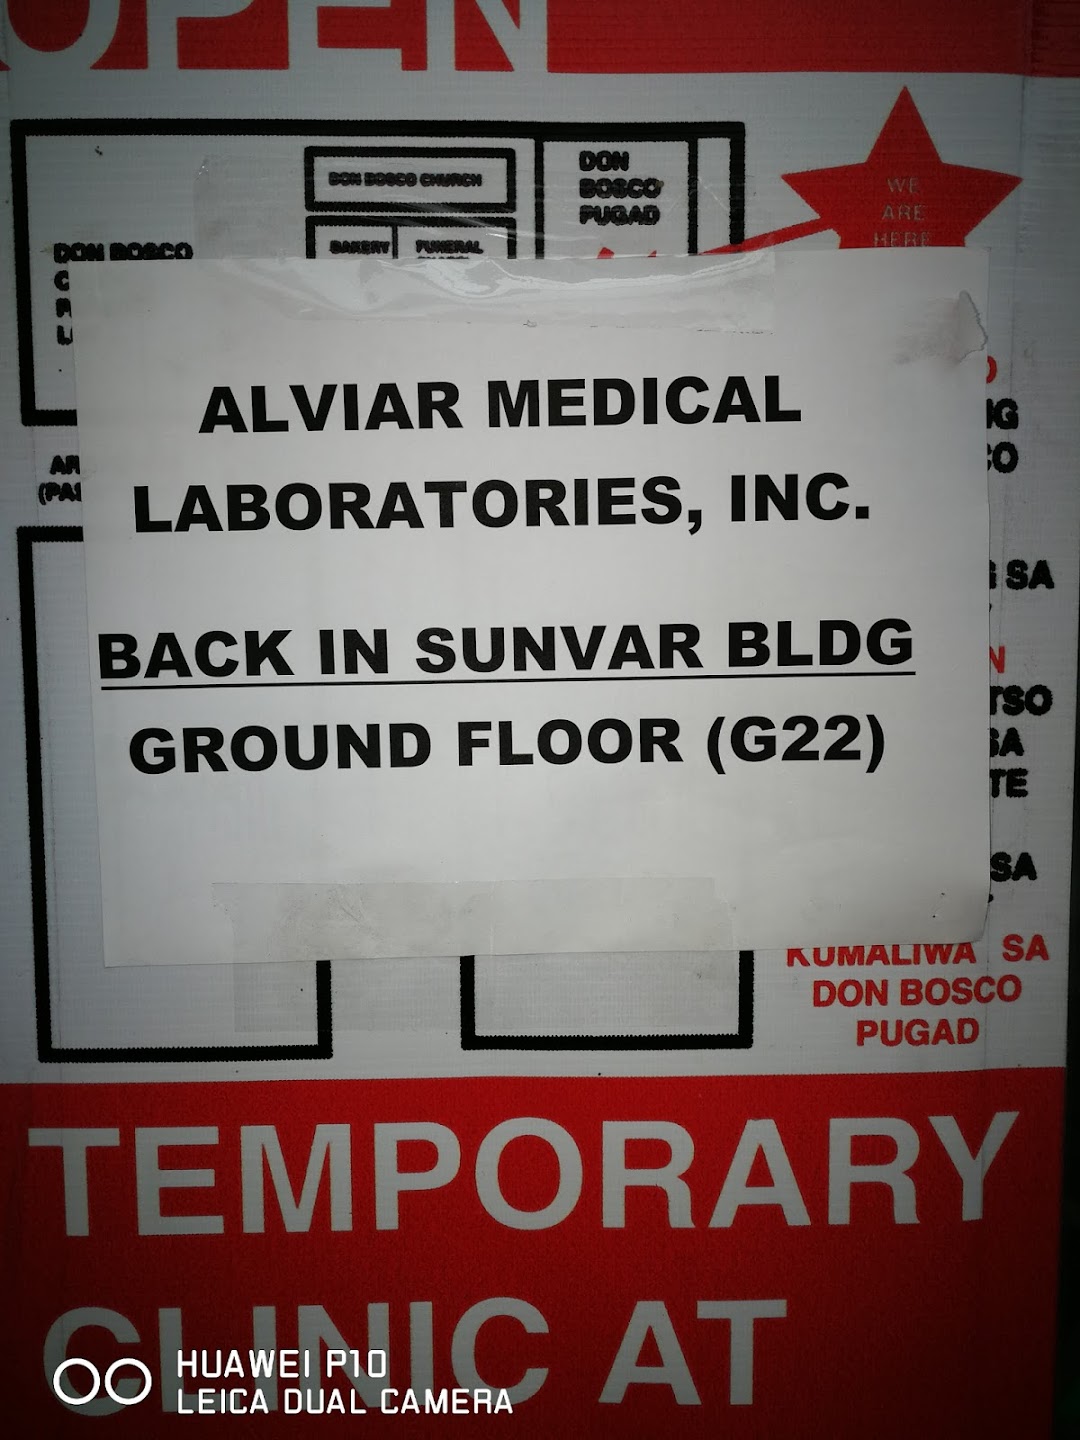 Alviar Medical Laboratories, Inc